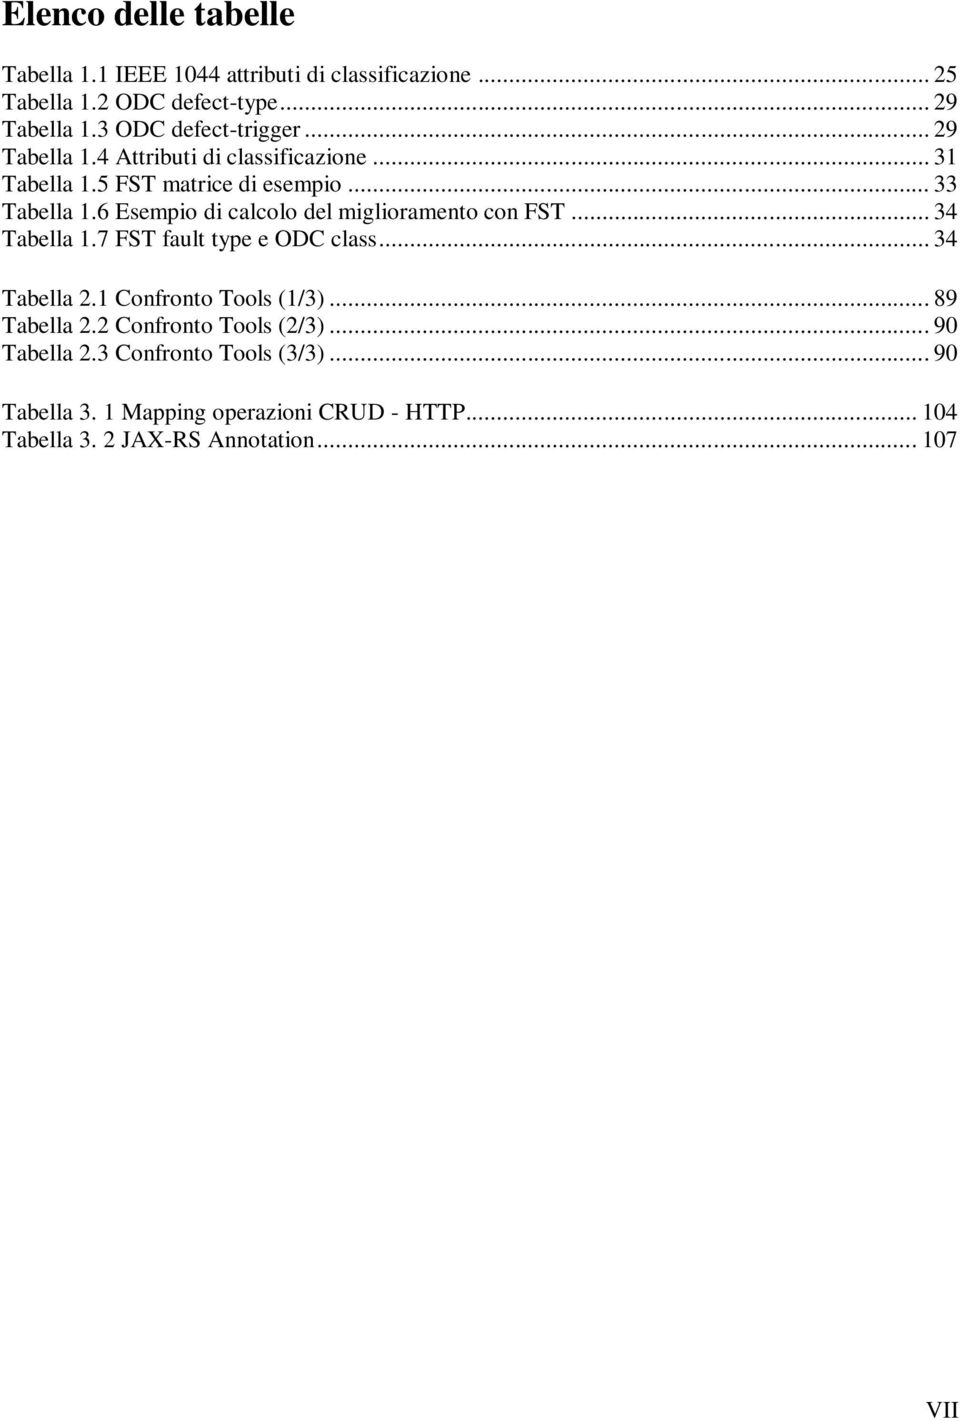 6 Esempio di calcolo del miglioramento con FST... 34 Tabella 1.7 FST fault type e ODC class... 34 Tabella 2.1 Confronto Tools (1/3).